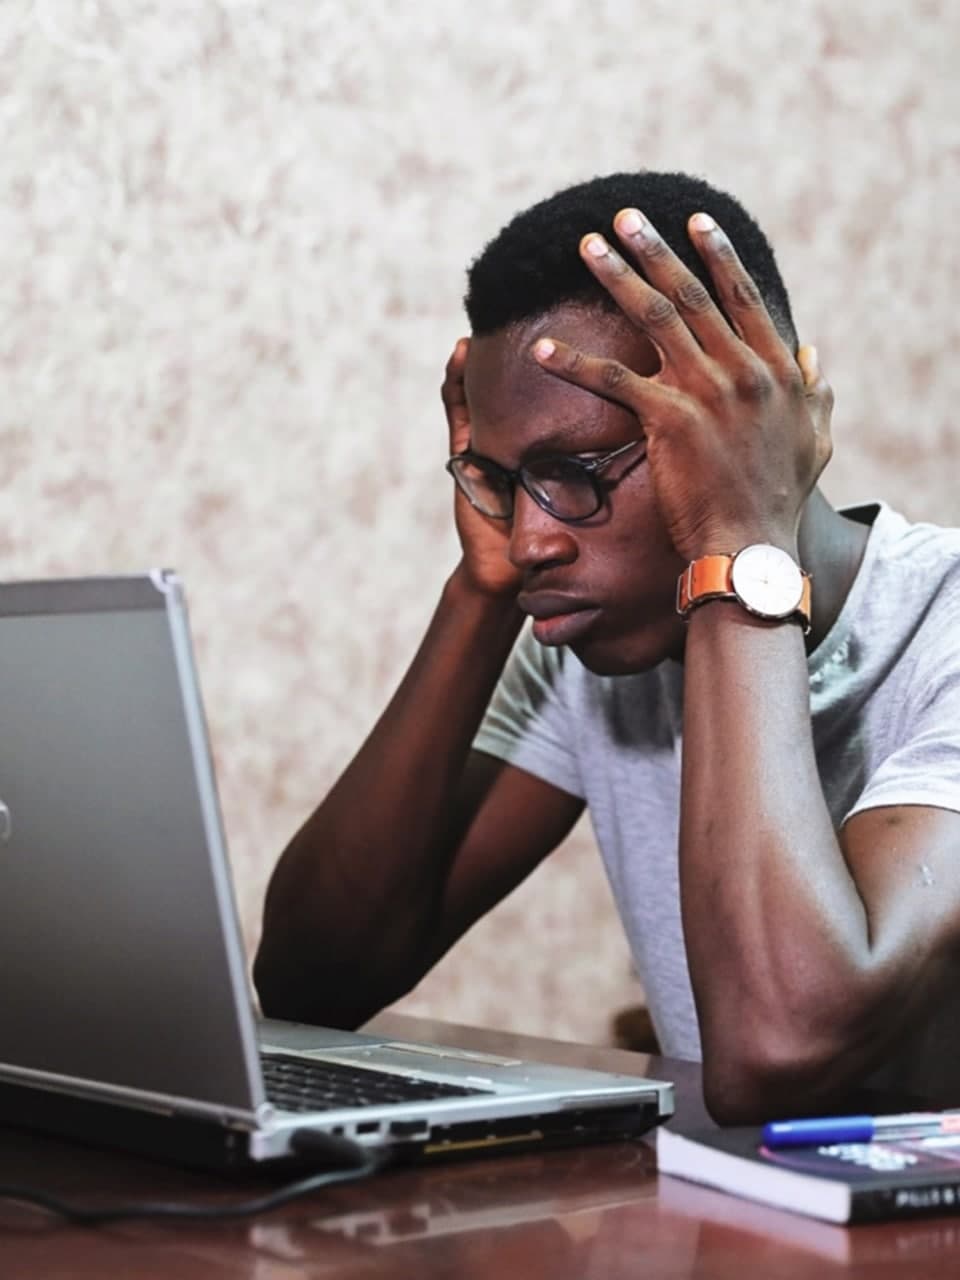 Depressed man watching laptop